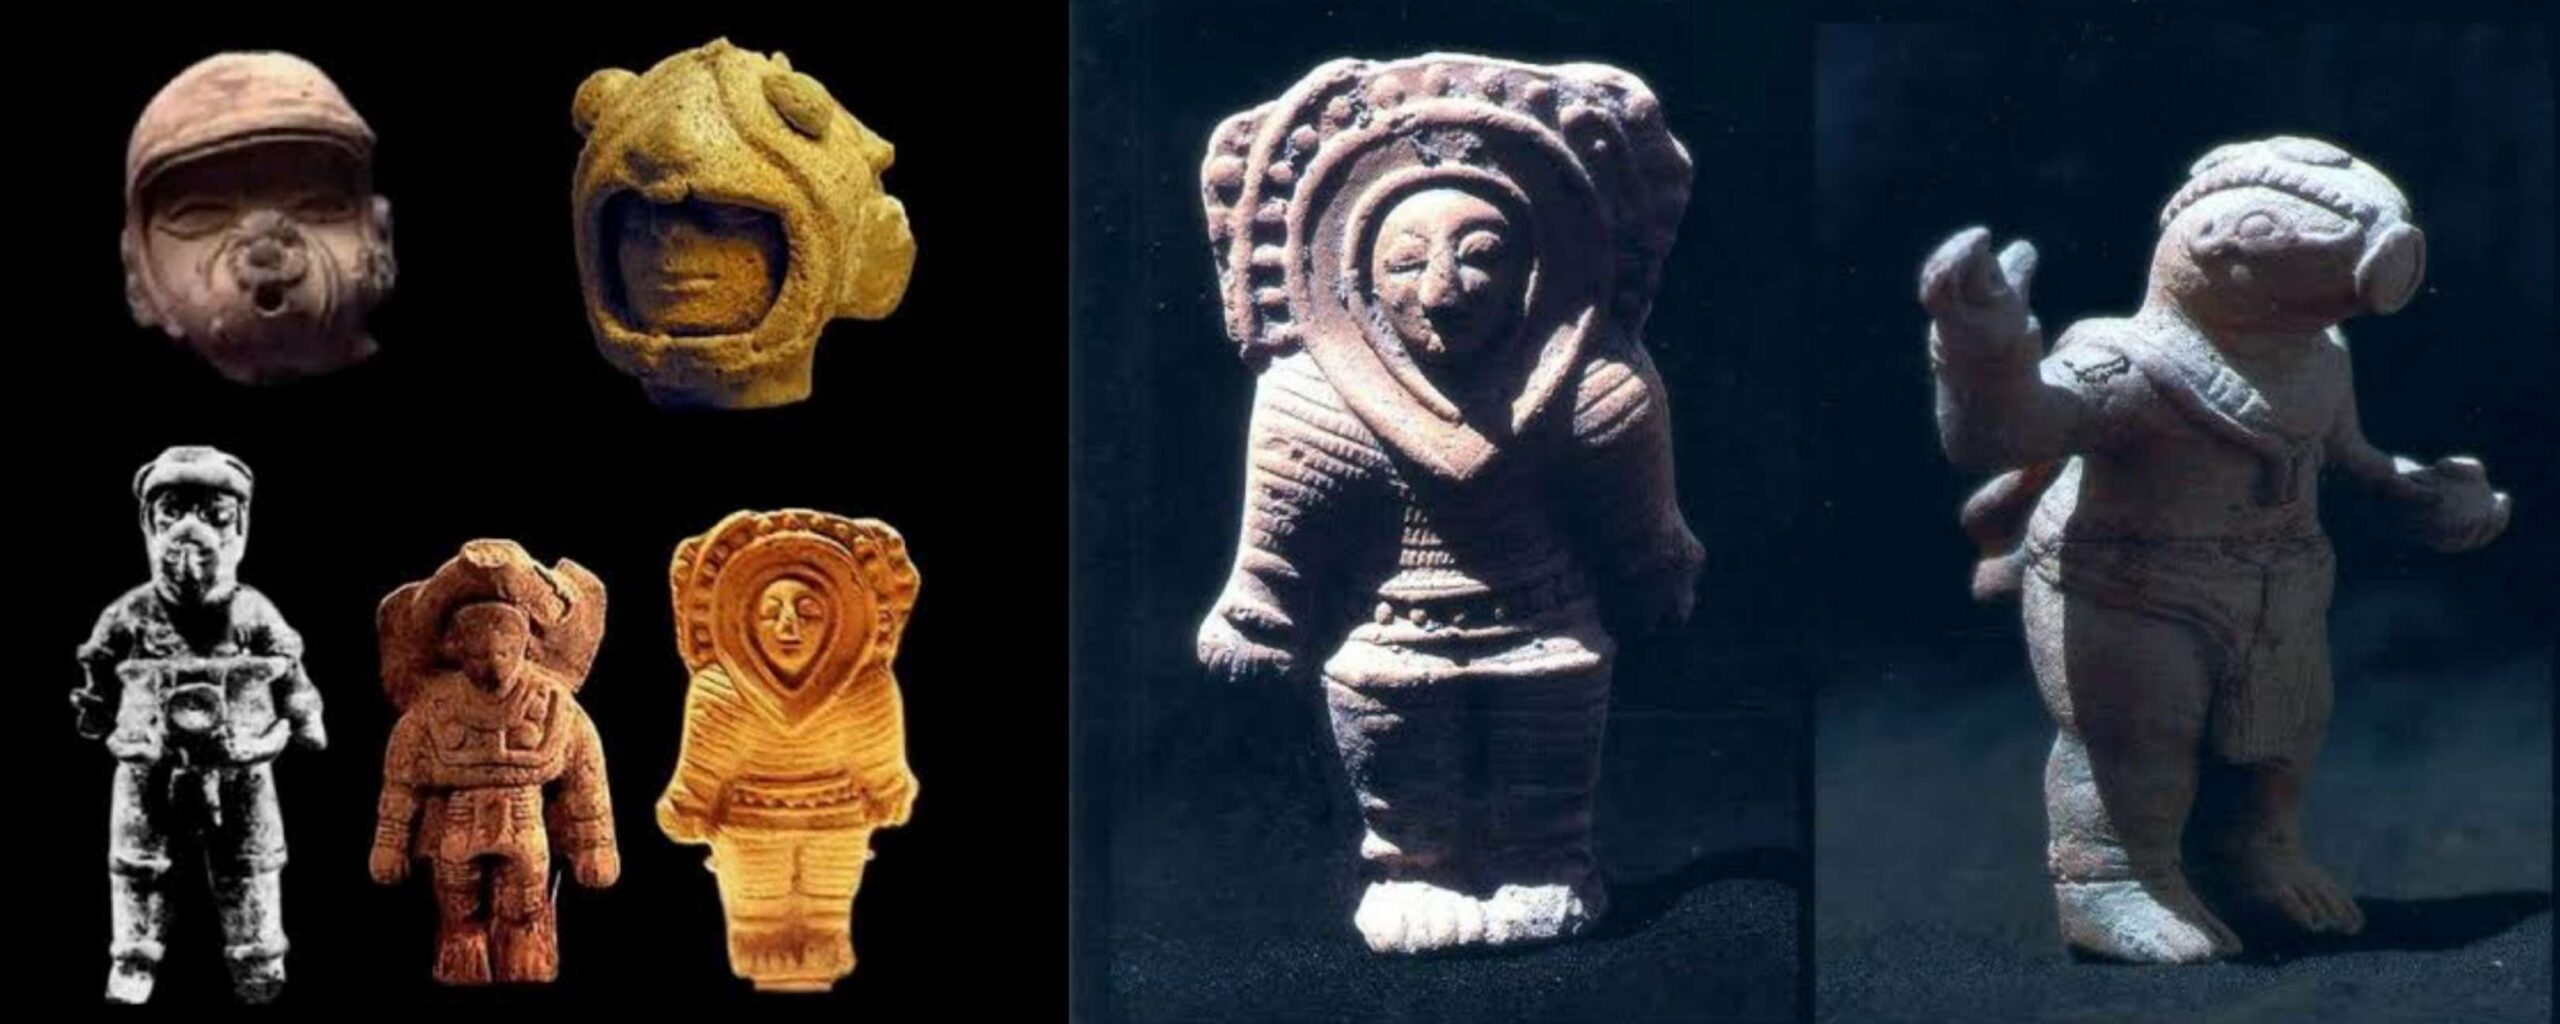 Les Mayas ont-ils été visités par d'anciens astronautes? 3